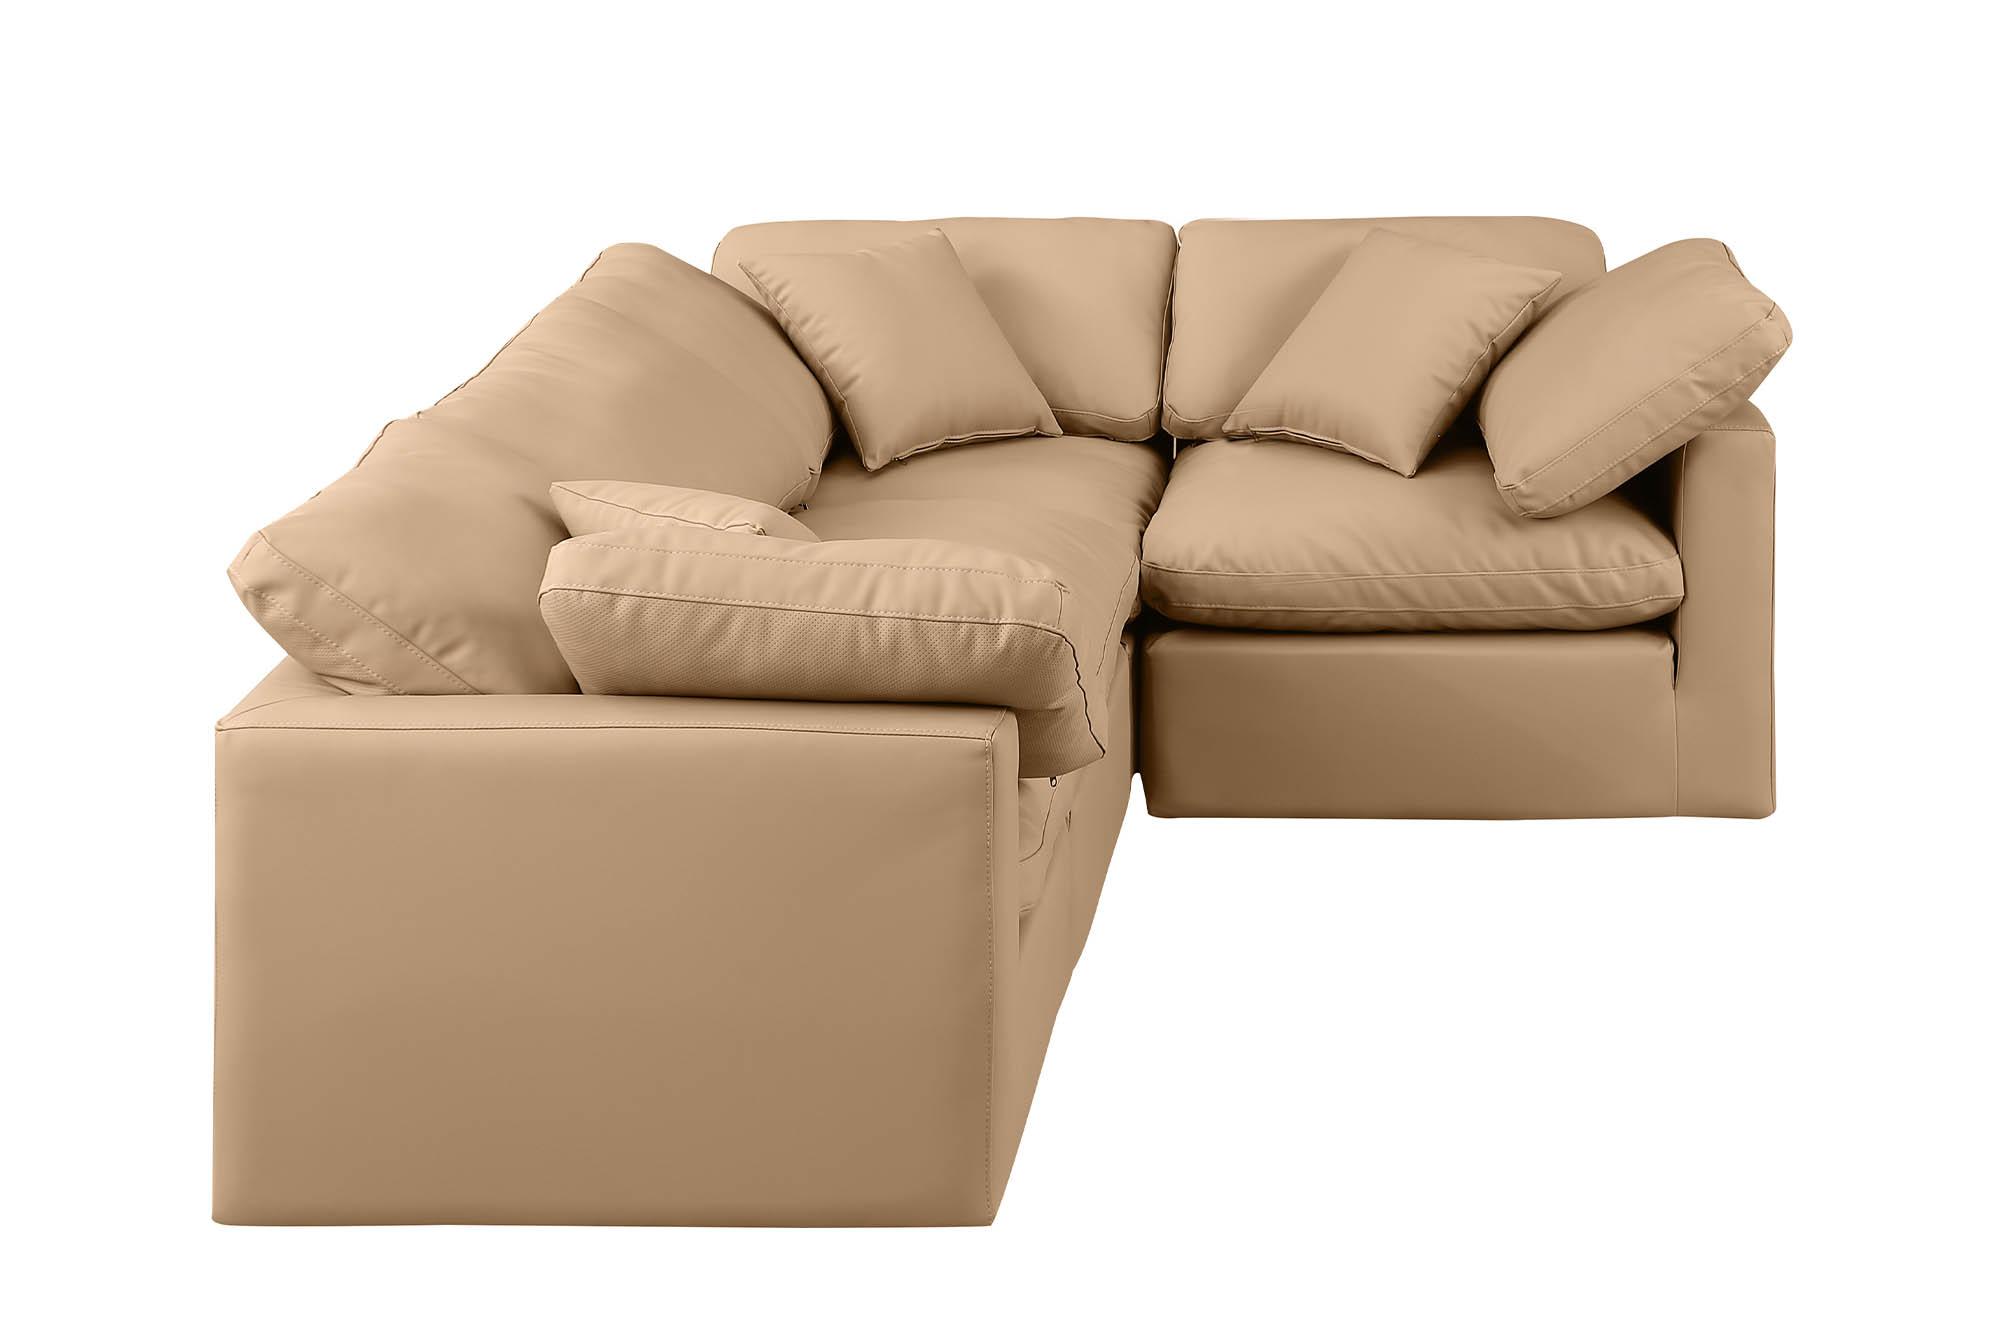 

    
Meridian Furniture INDULGE 146Tan-Sec4C Modular Sectional Sofa Tan 146Tan-Sec4C
